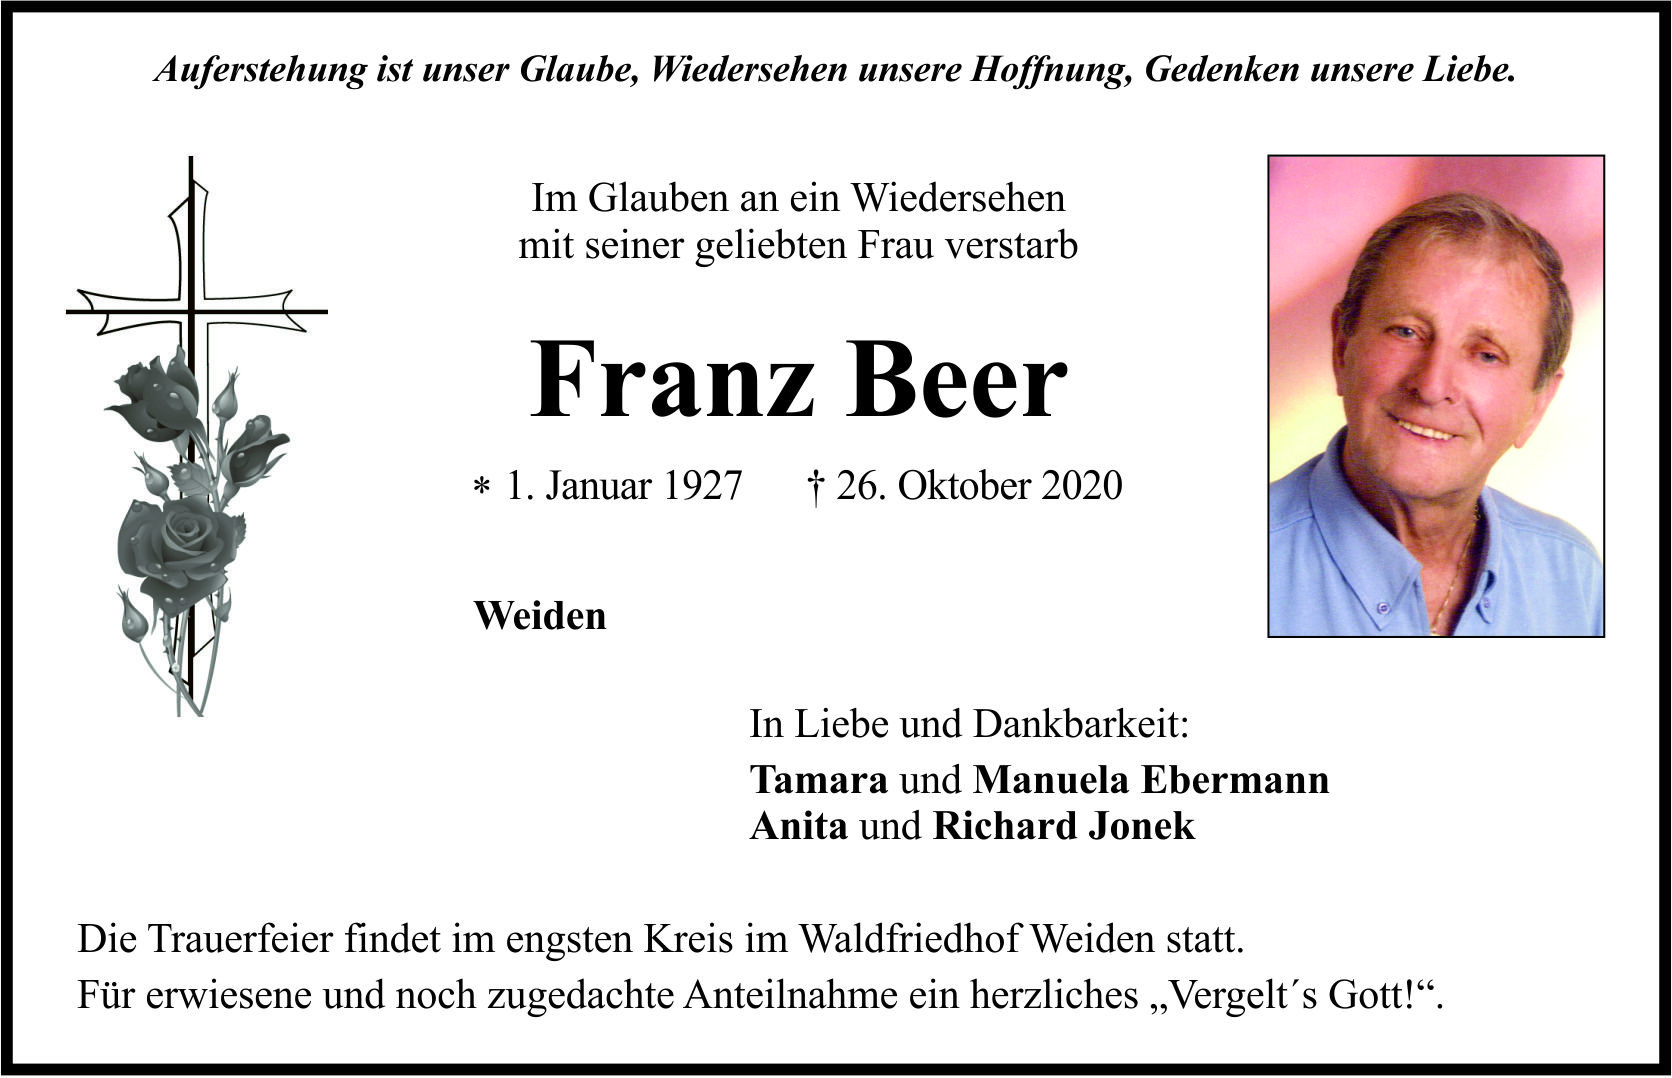 Traueranzeige Franz Beer, Weiden